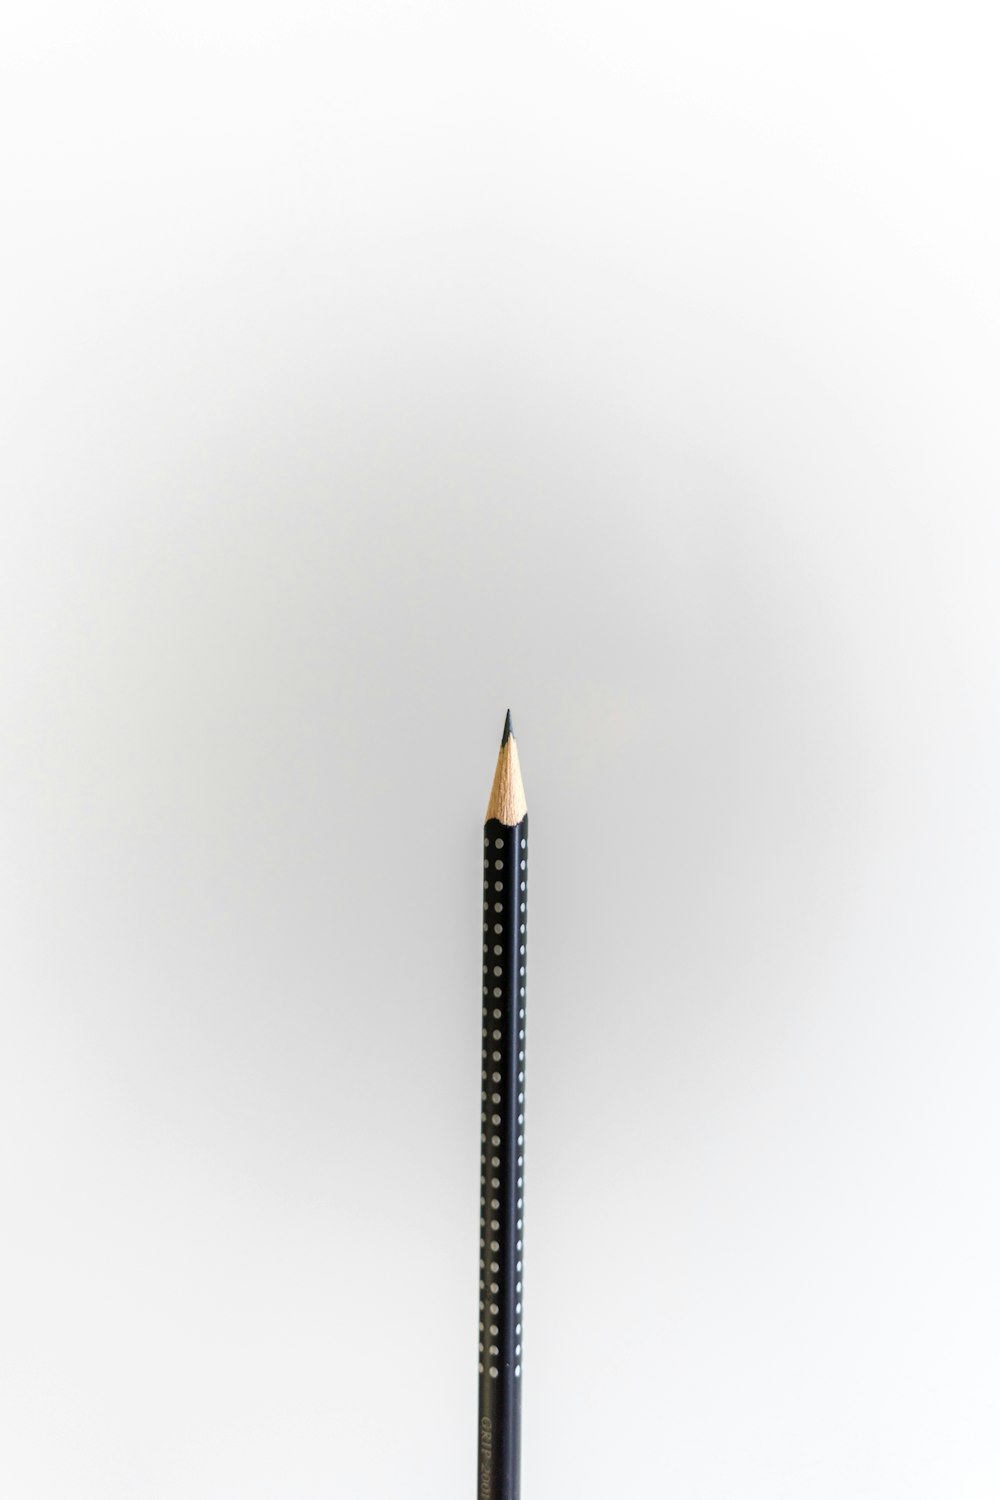 crayon noir sur surface blanche